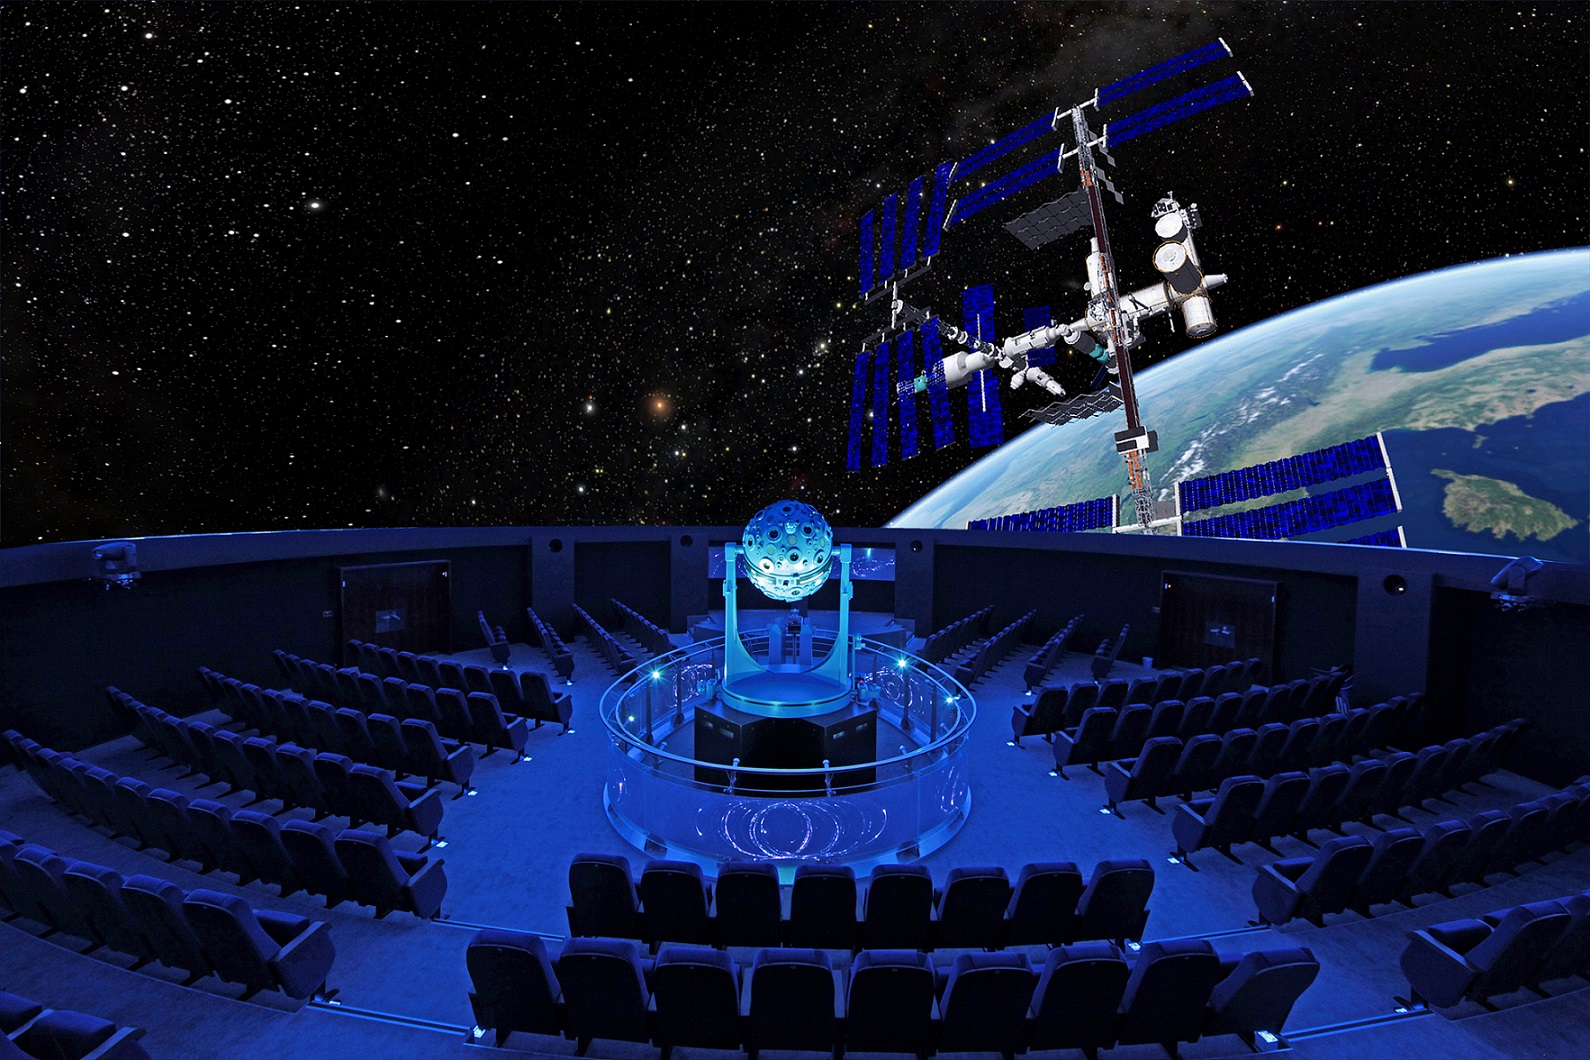 Das Zeiss Planetarium Bochum von innen: Die 360°-Projektion zeigt die Raumstation ISS und die Erde. Foto: Lutz Leitmann/Stadt Bochum